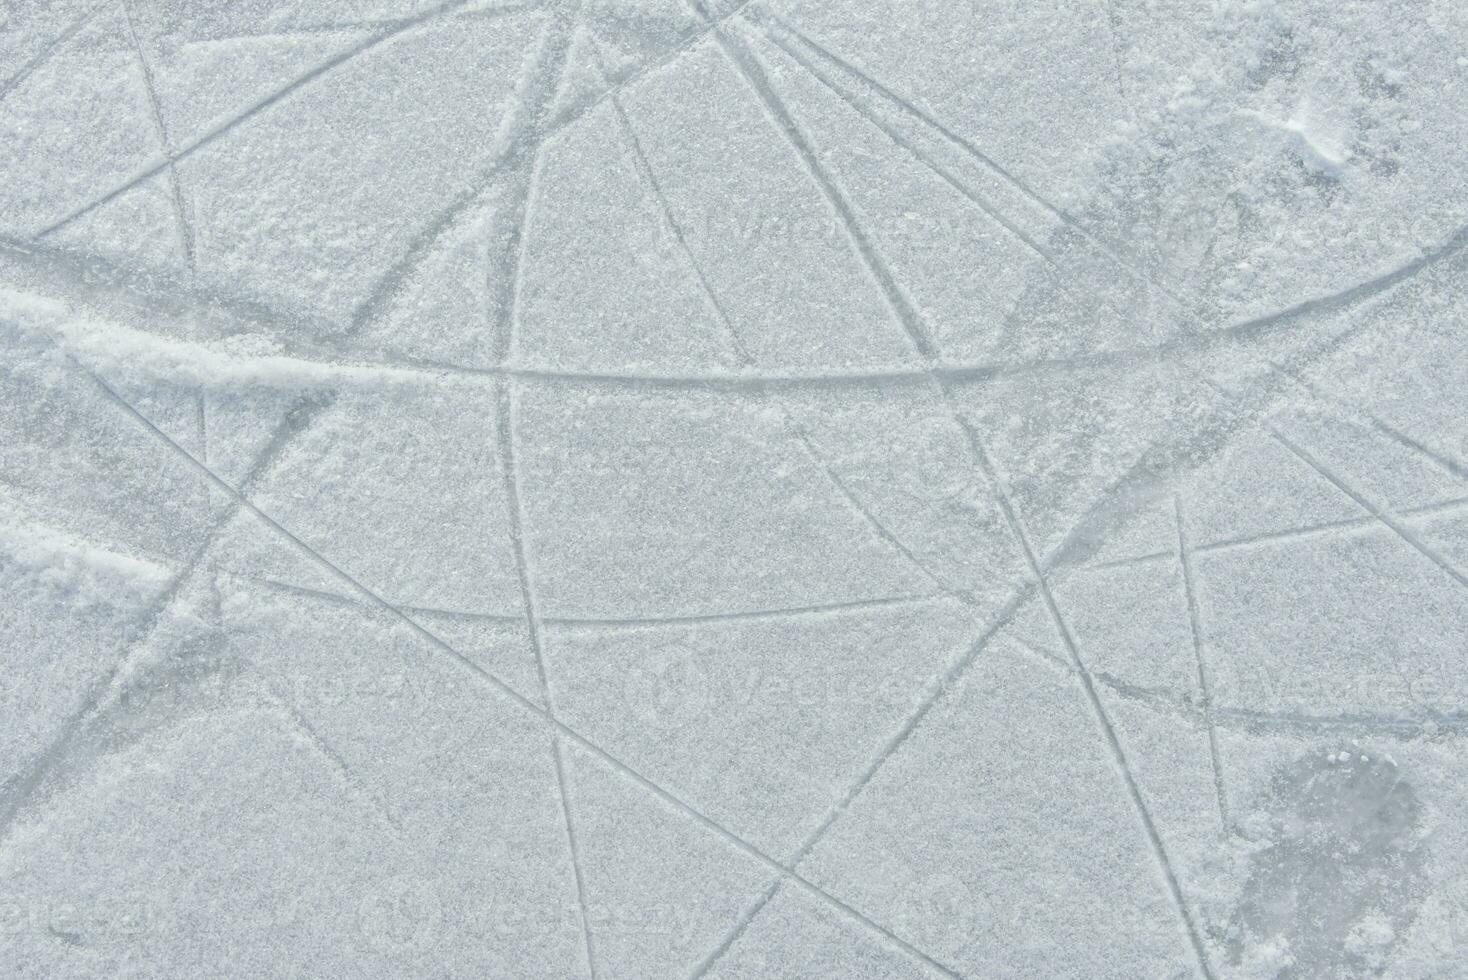 huellas en el hielo desde patines en el pista foto